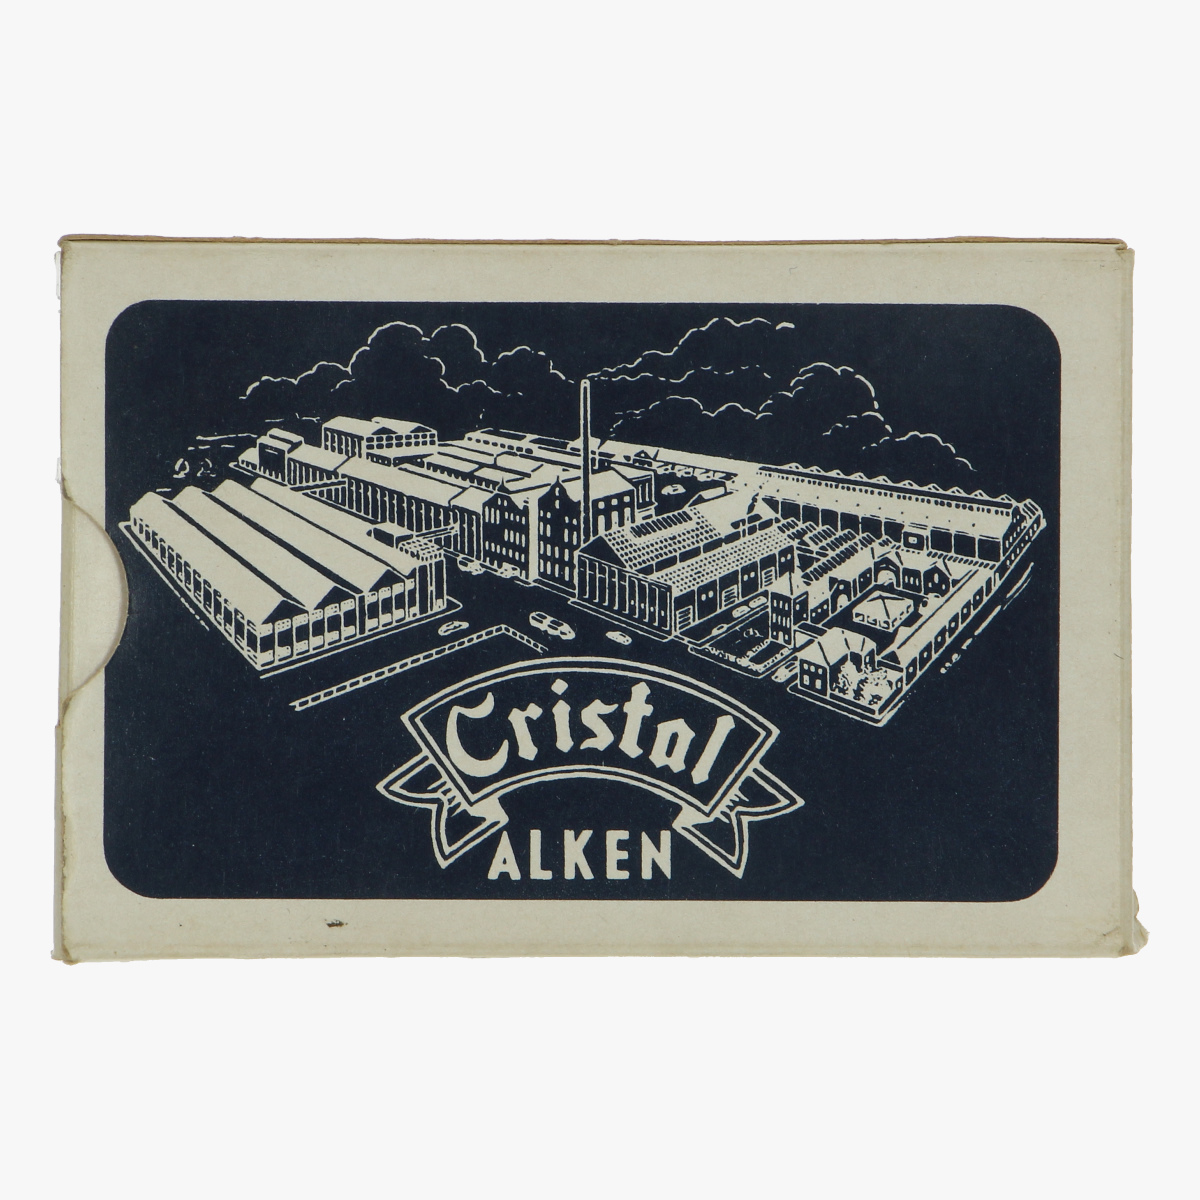 Afbeeldingen van oud spel speelkaarten Cristal Alken